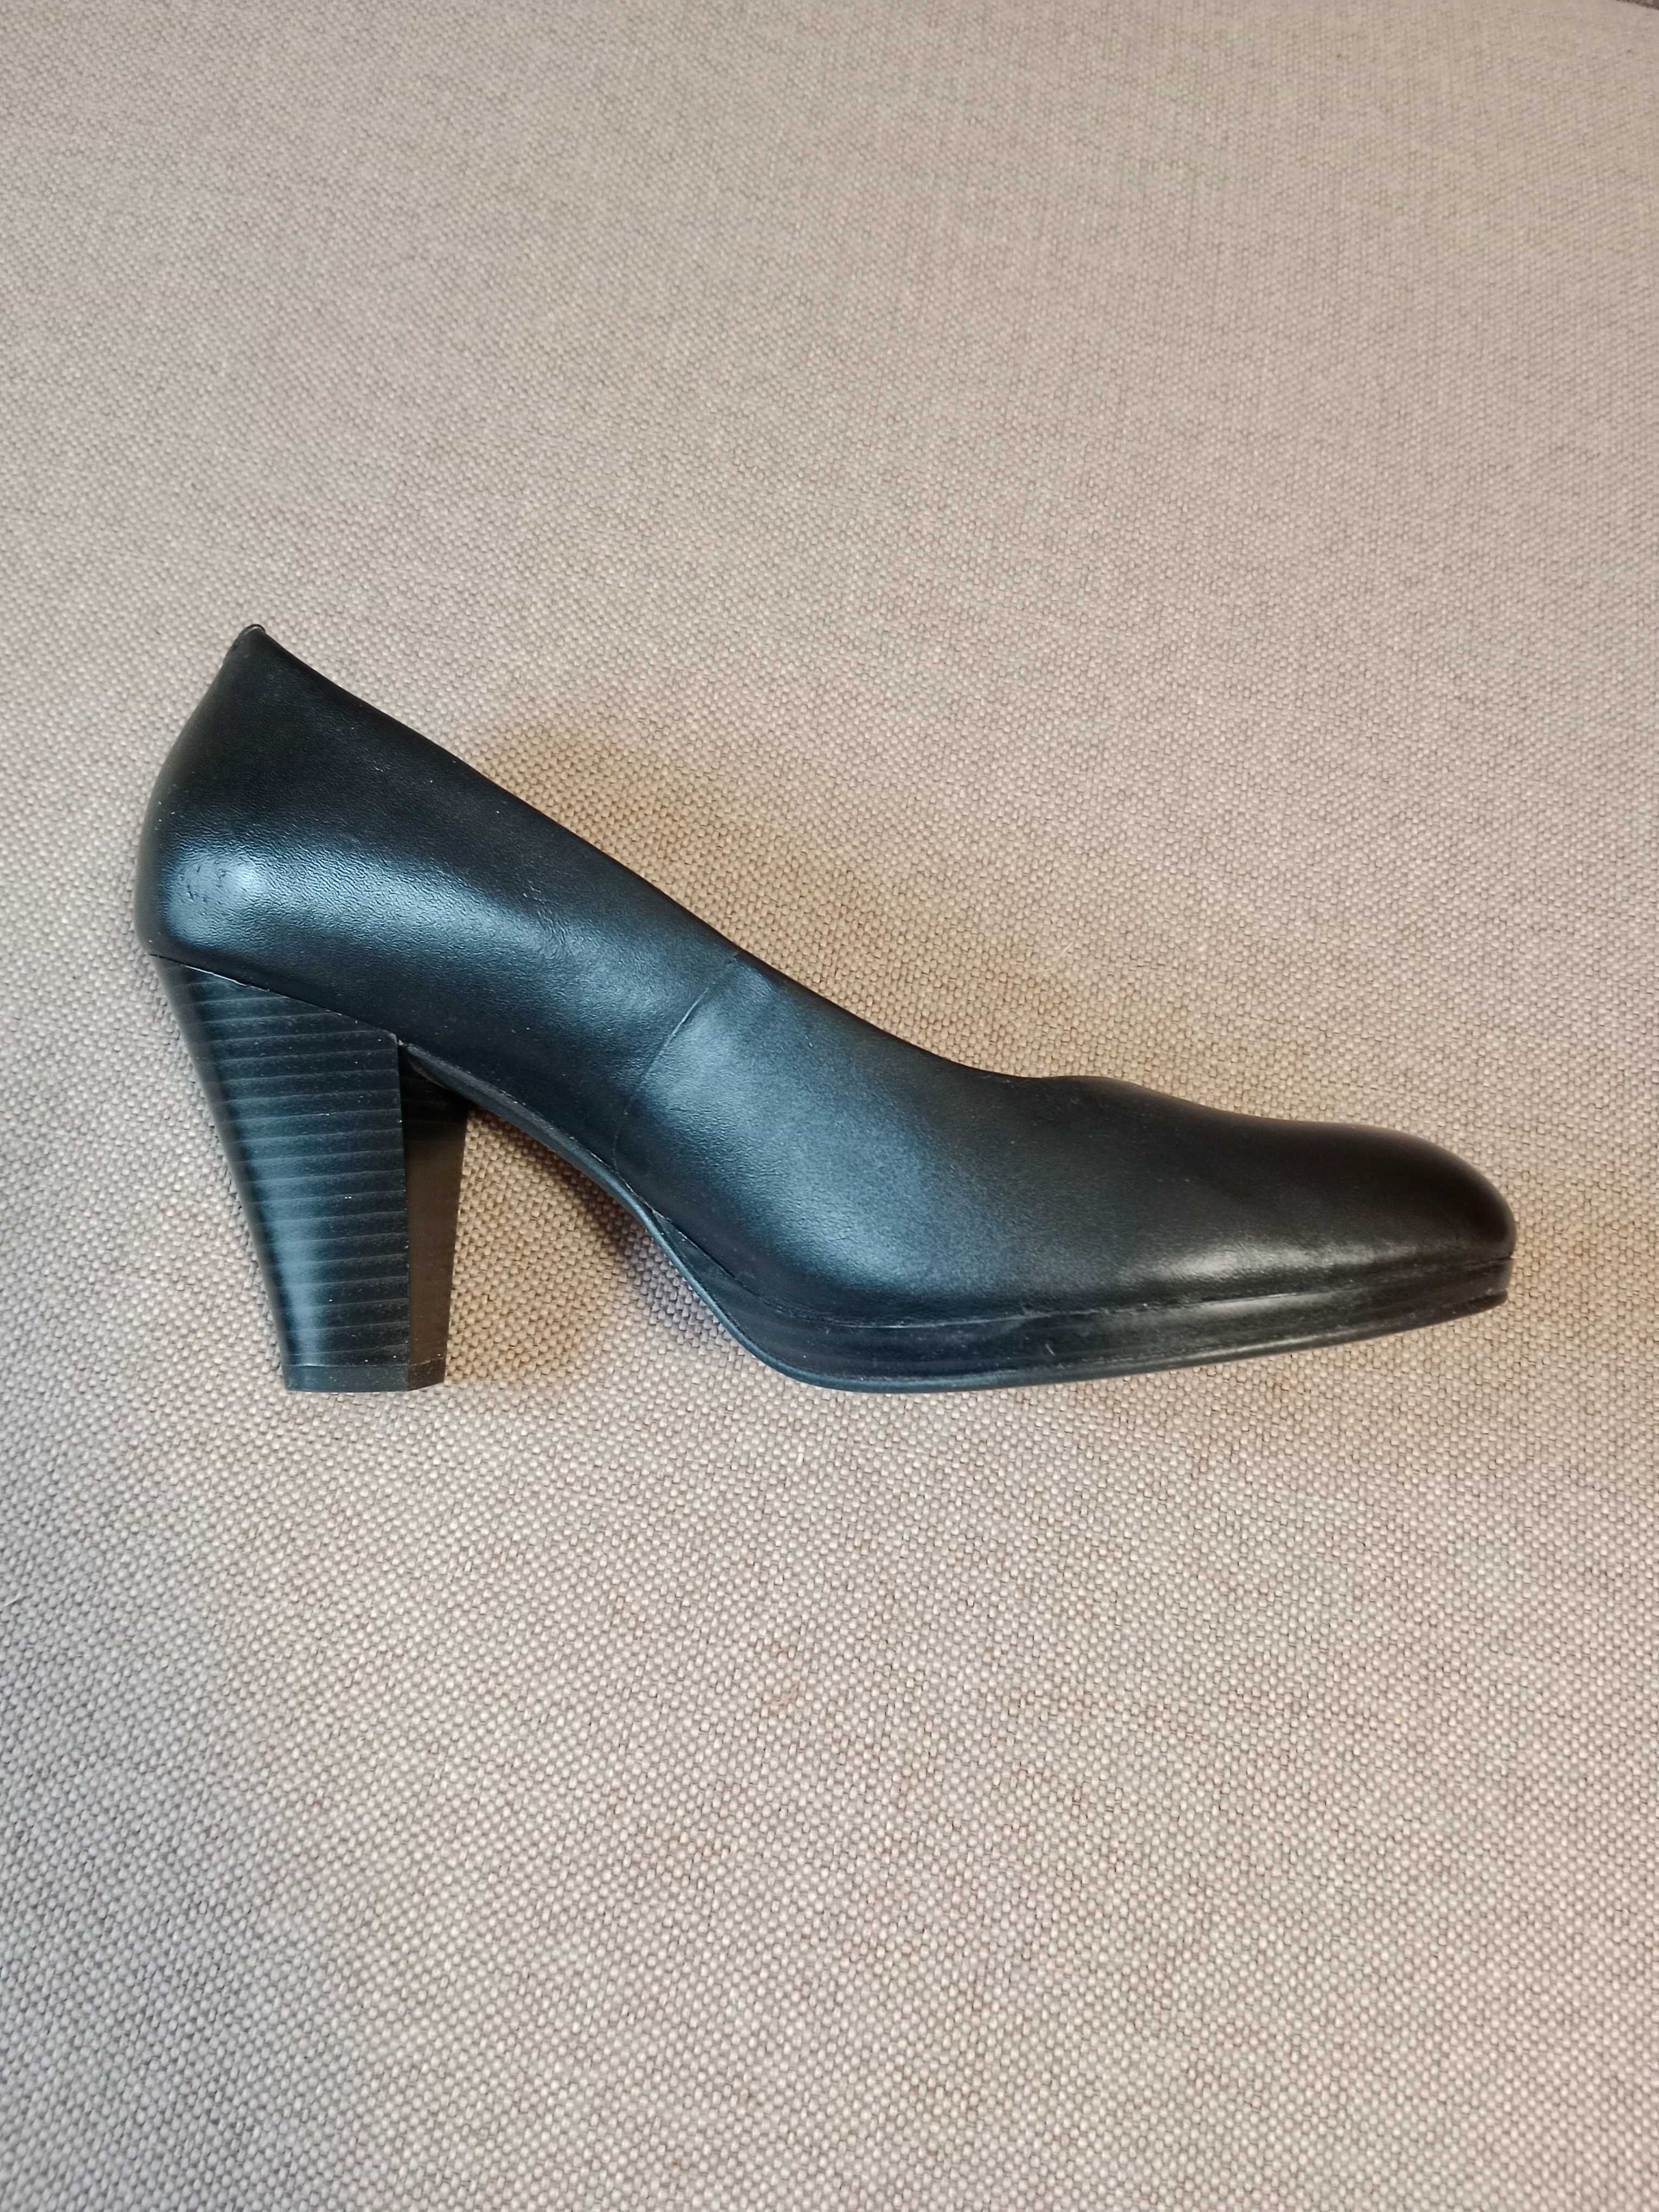 Жіночі туфлі Clarks. Великобританія. Розмір 41.5